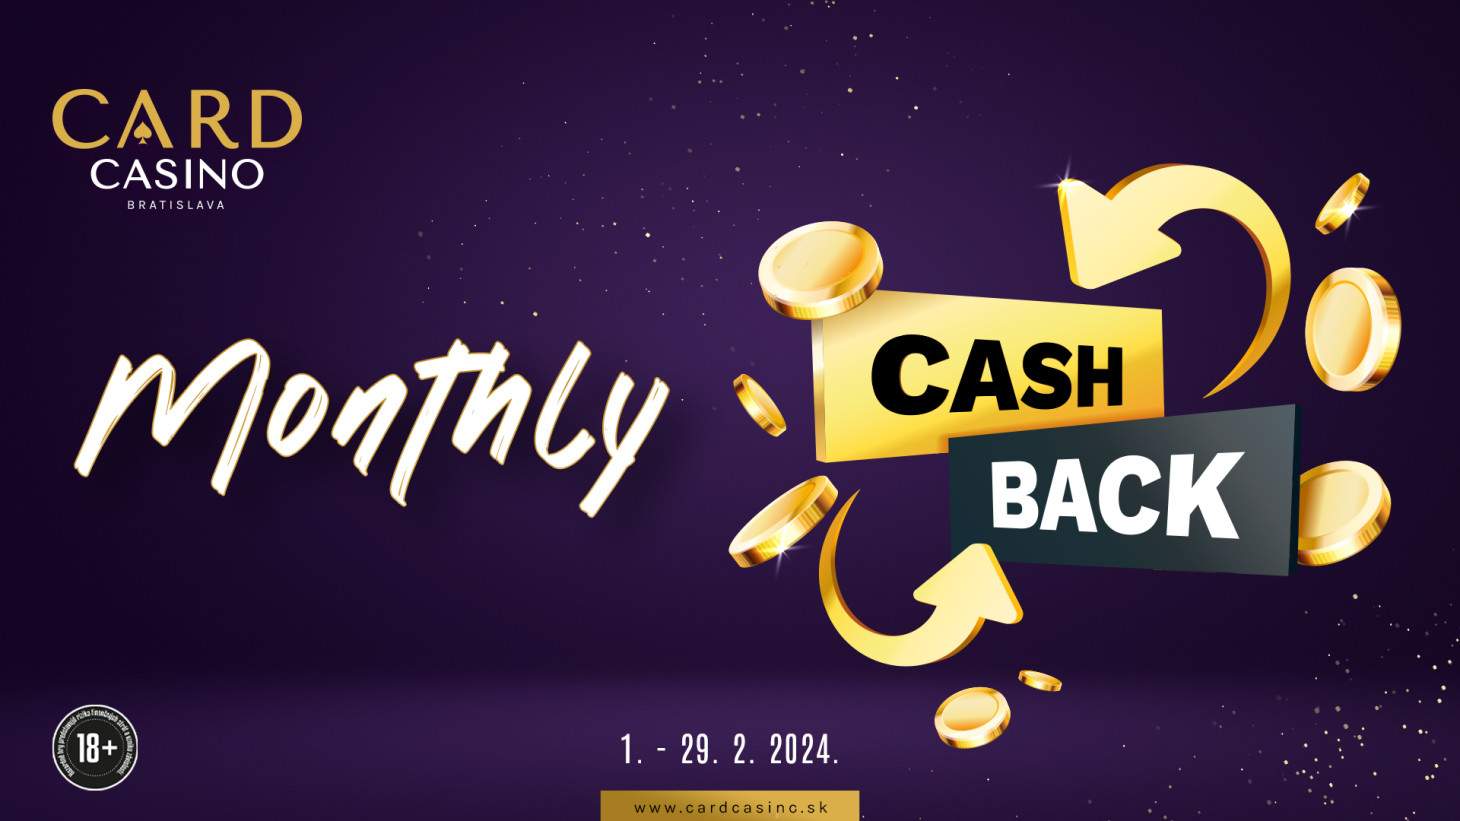 Hrať Cash v Carde sa oplatí vďaka Cashback akcii mesiaca